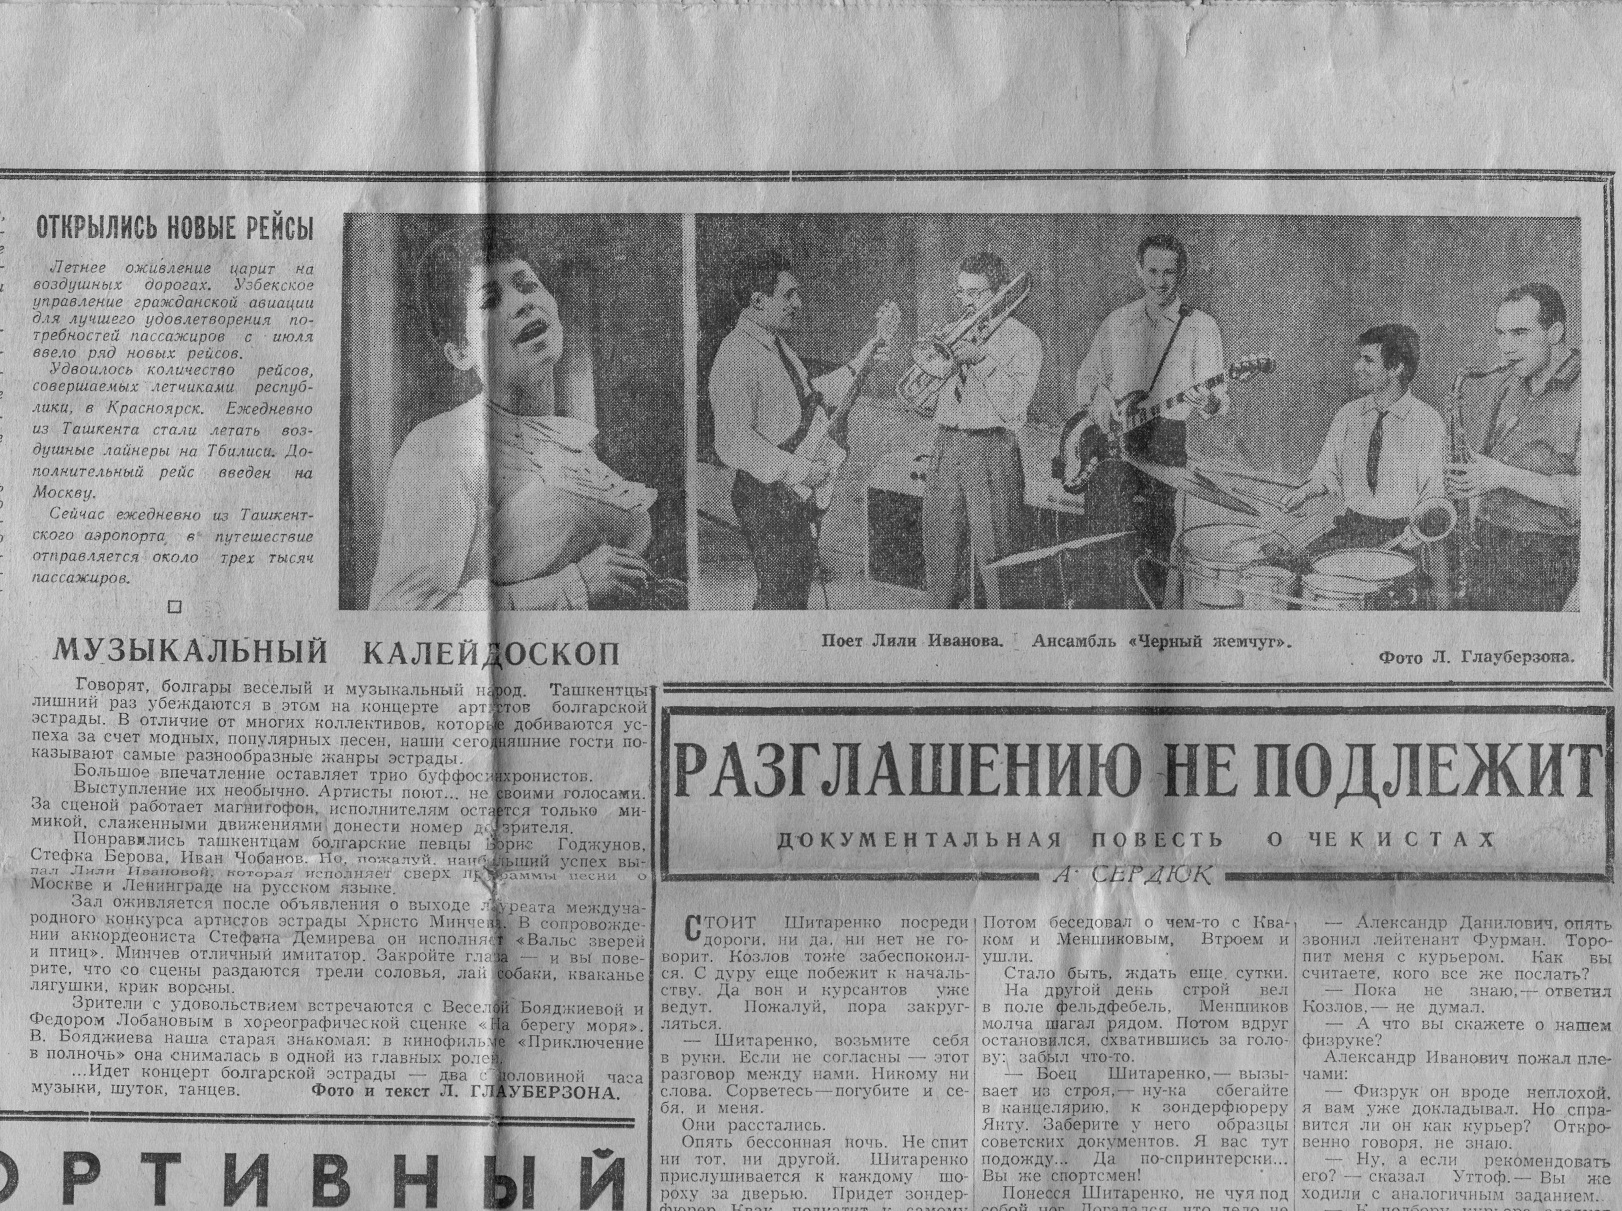 4 юли 1965 г.: „Ташкентская правда“ разказва за гостуването на българските музиканти